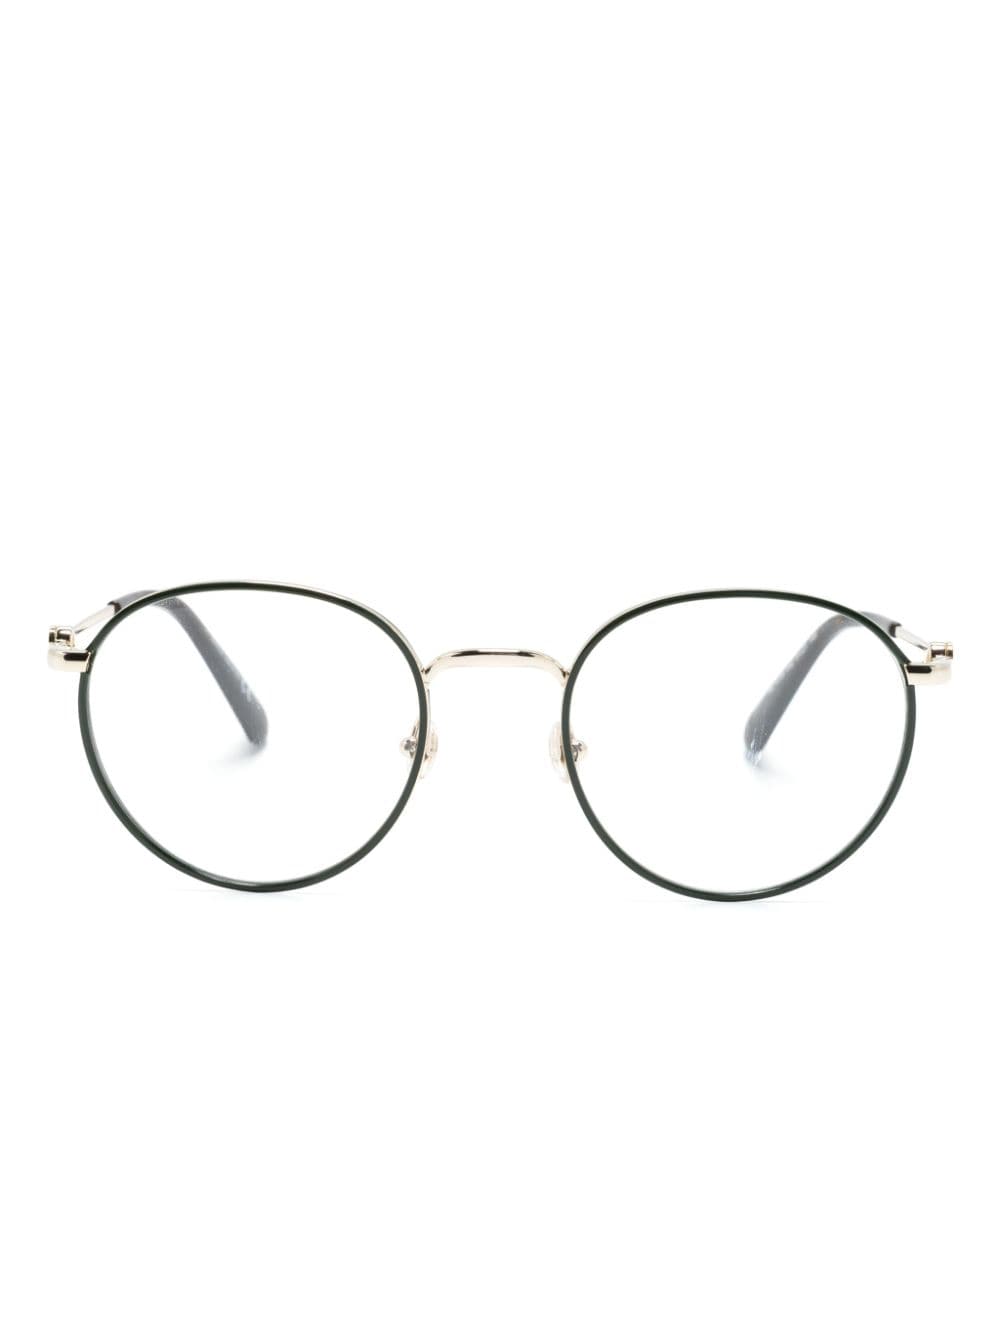 Moncler Eyewear Brille mit rundem Gestell - Schwarz von Moncler Eyewear